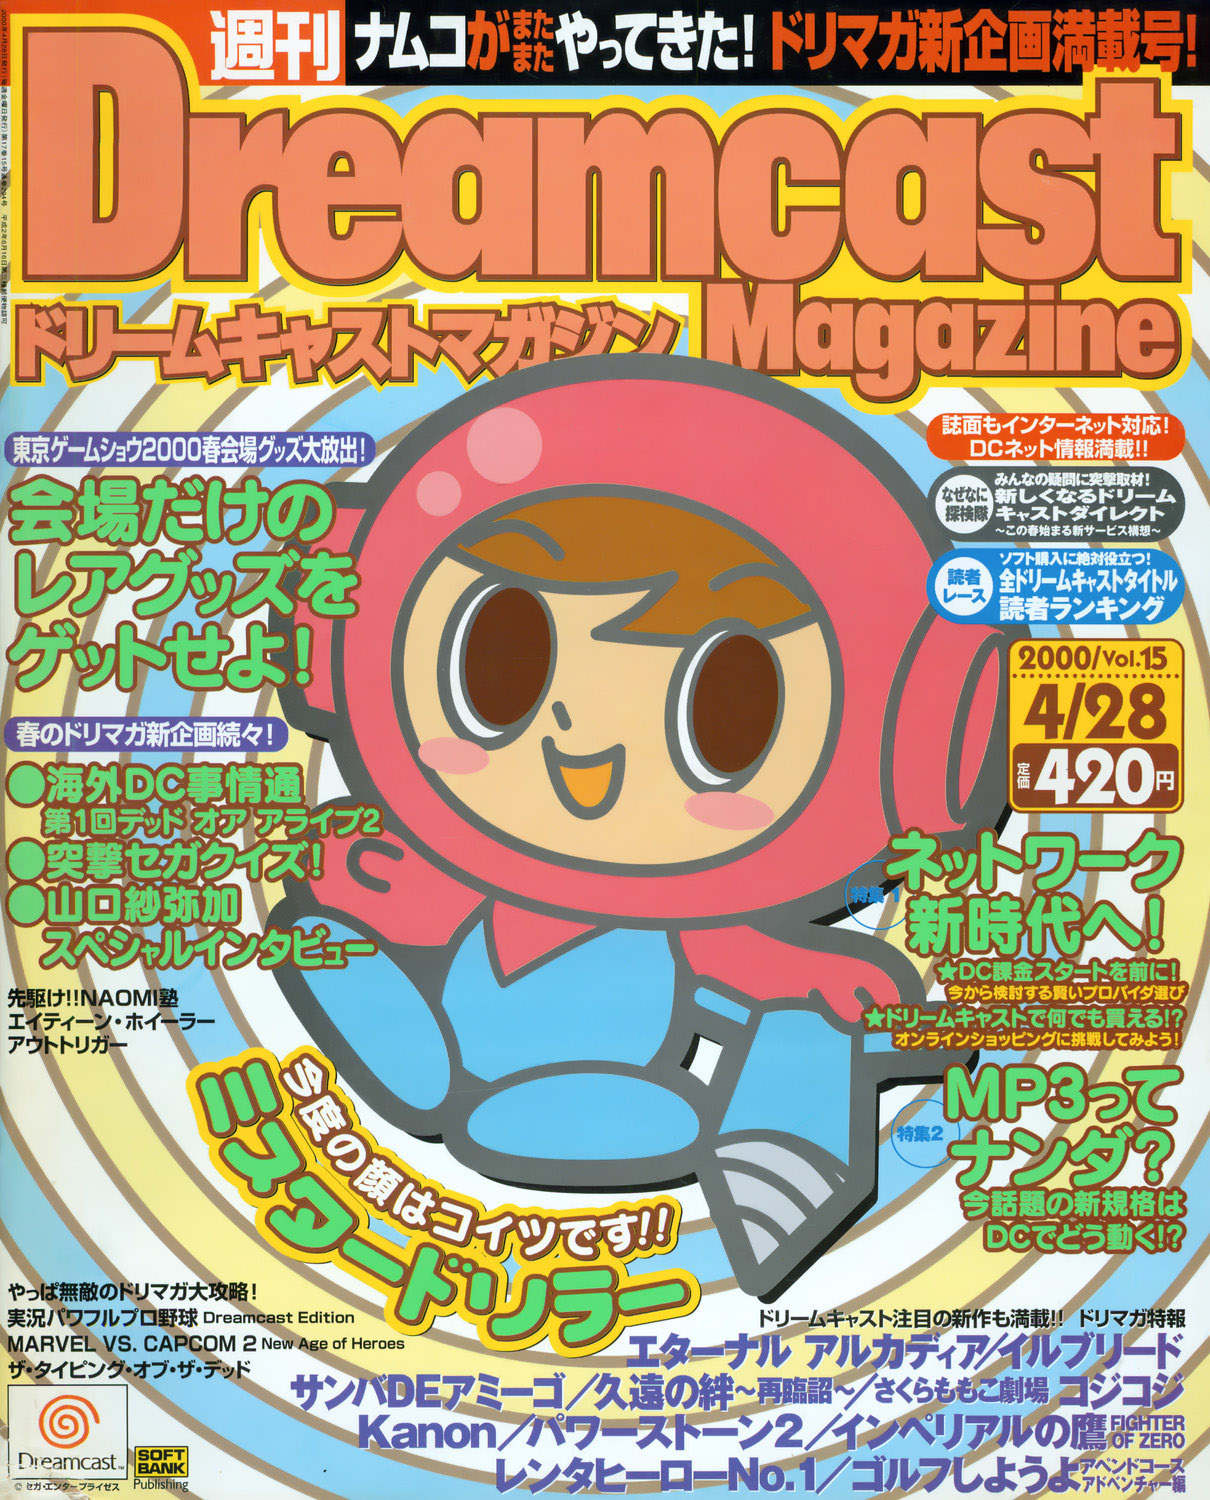 Dreamcast Magazine 067 April 28 00 Dreamcast Magazine Jp Retromags Community